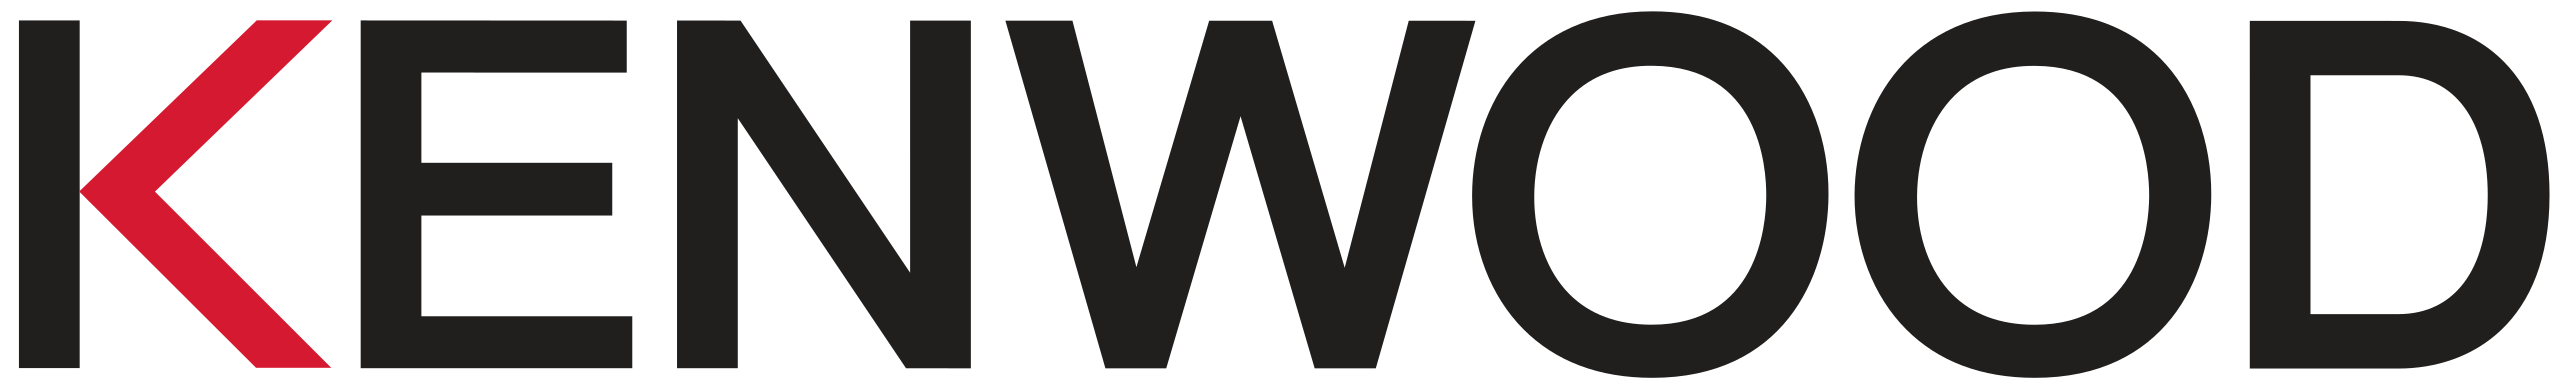 Das Kenwood-Logo